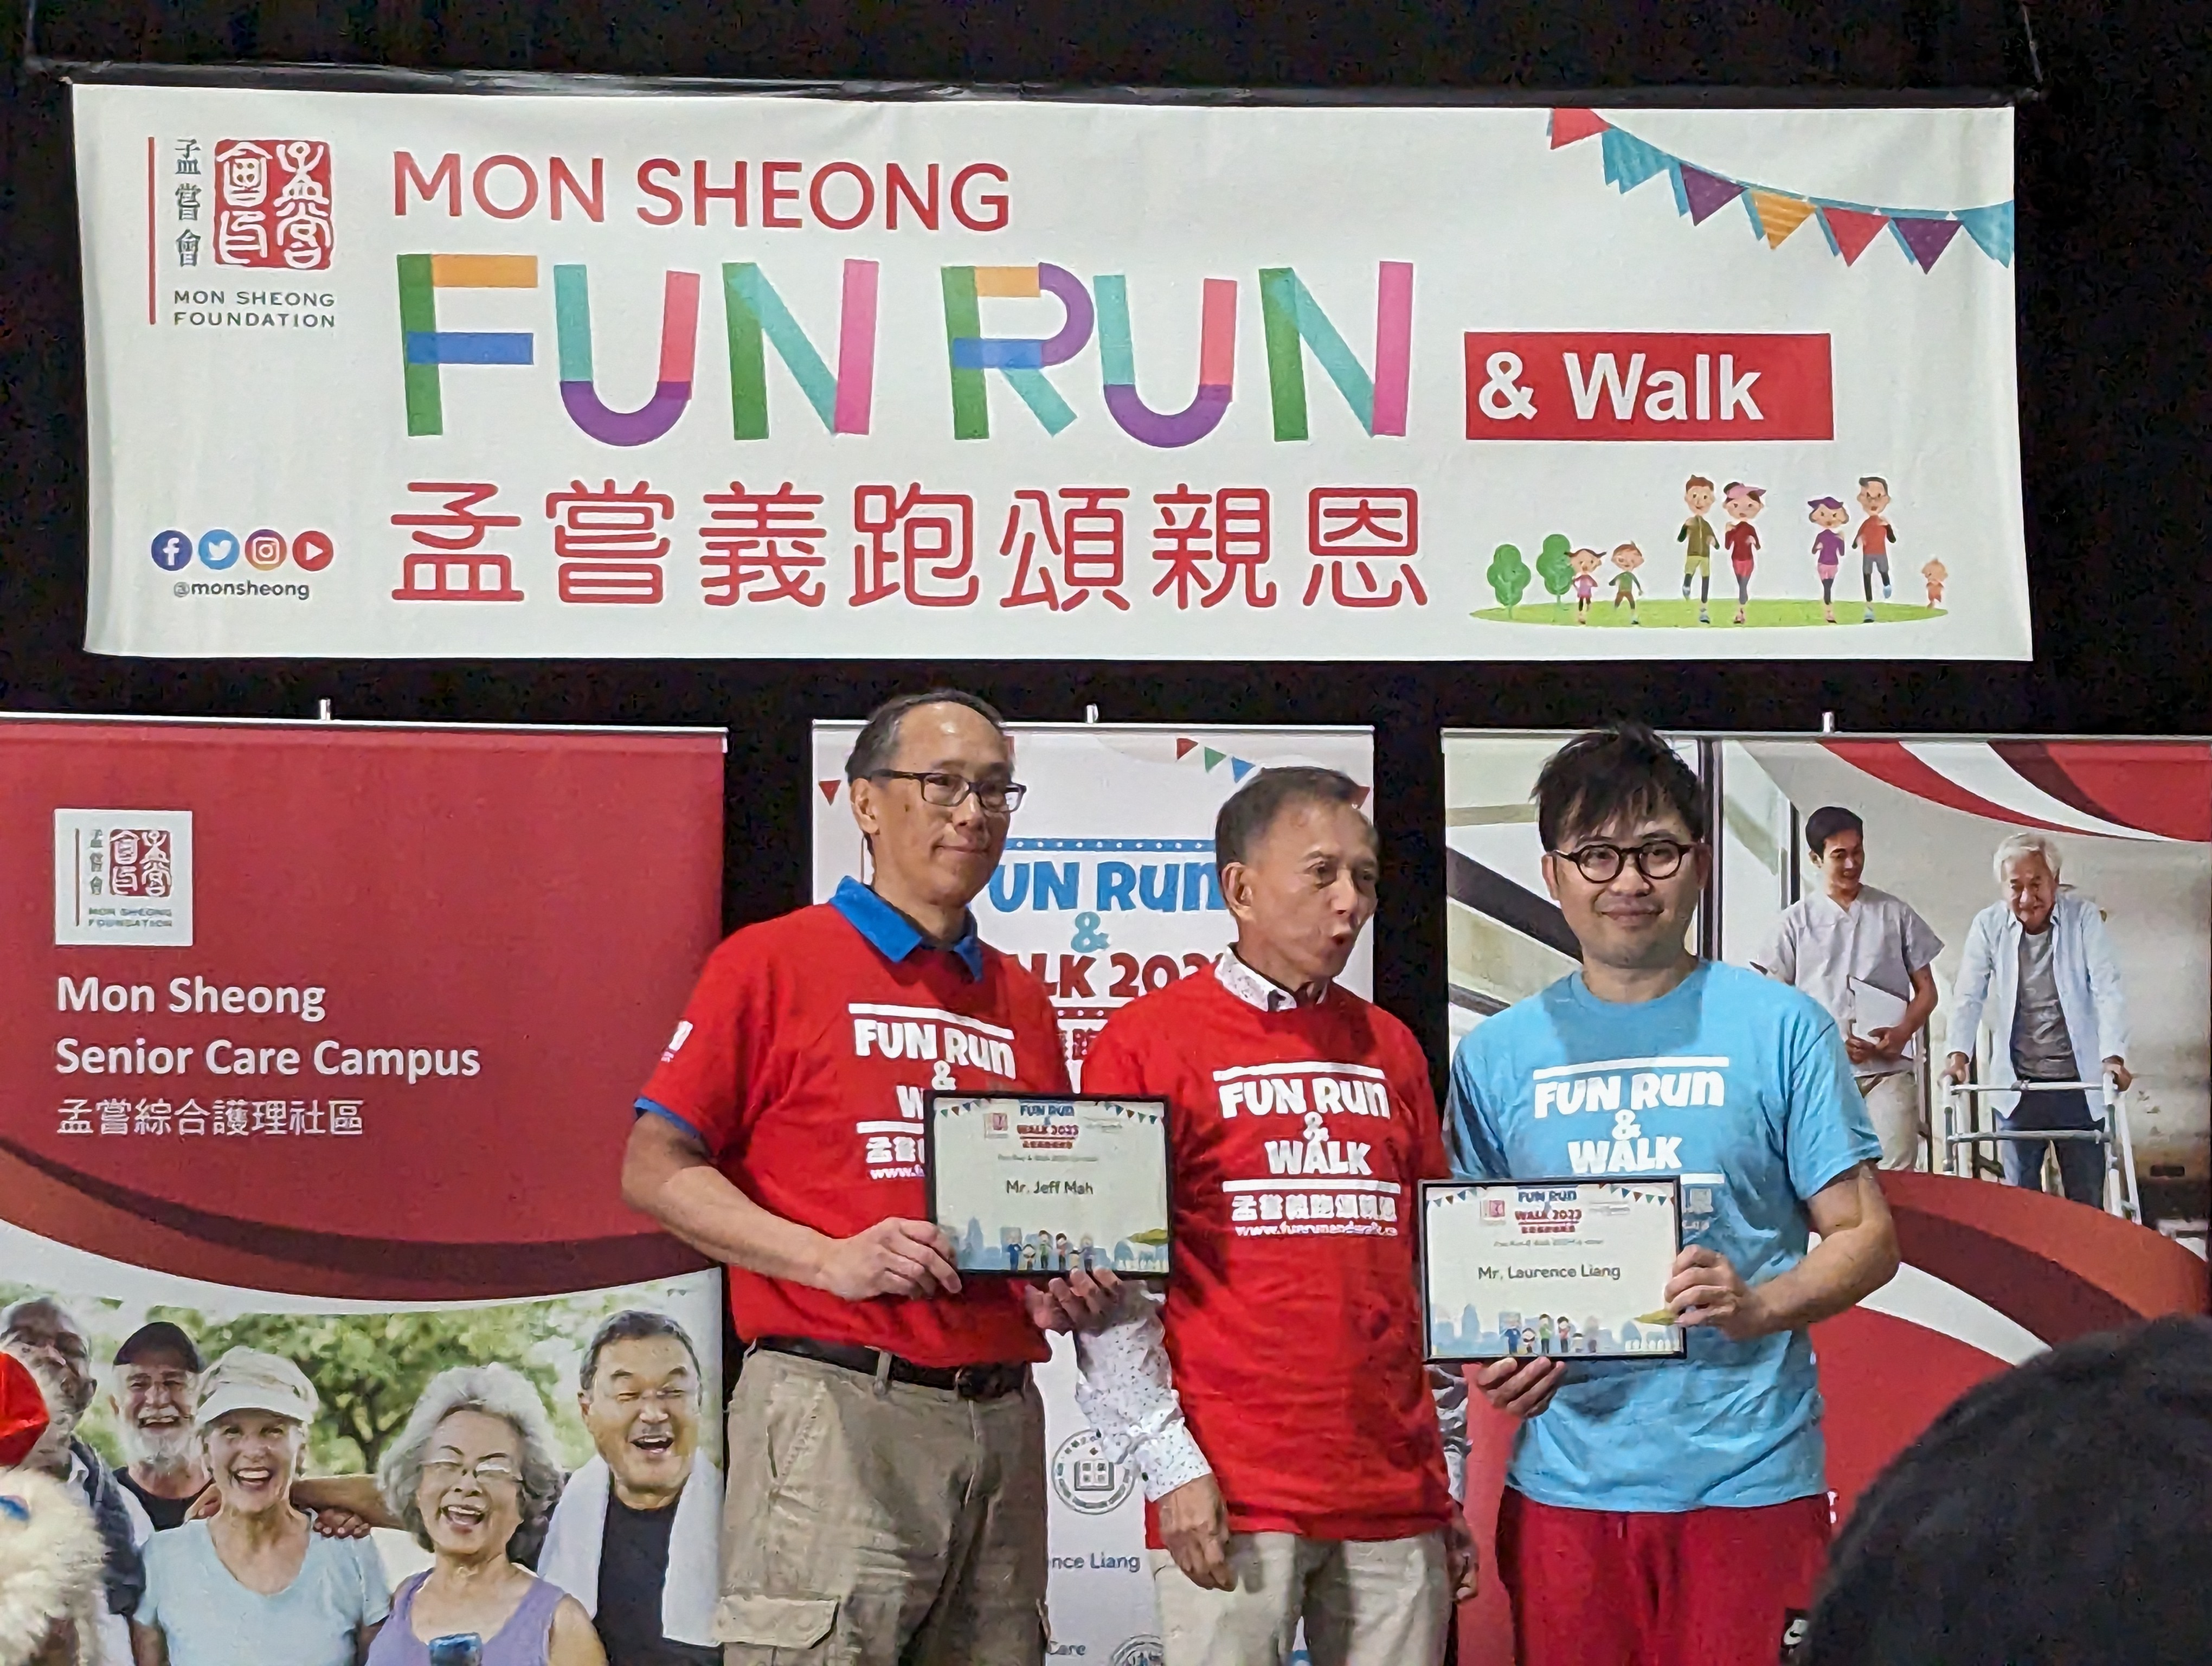 Mon Sheong Fun Run & Walk